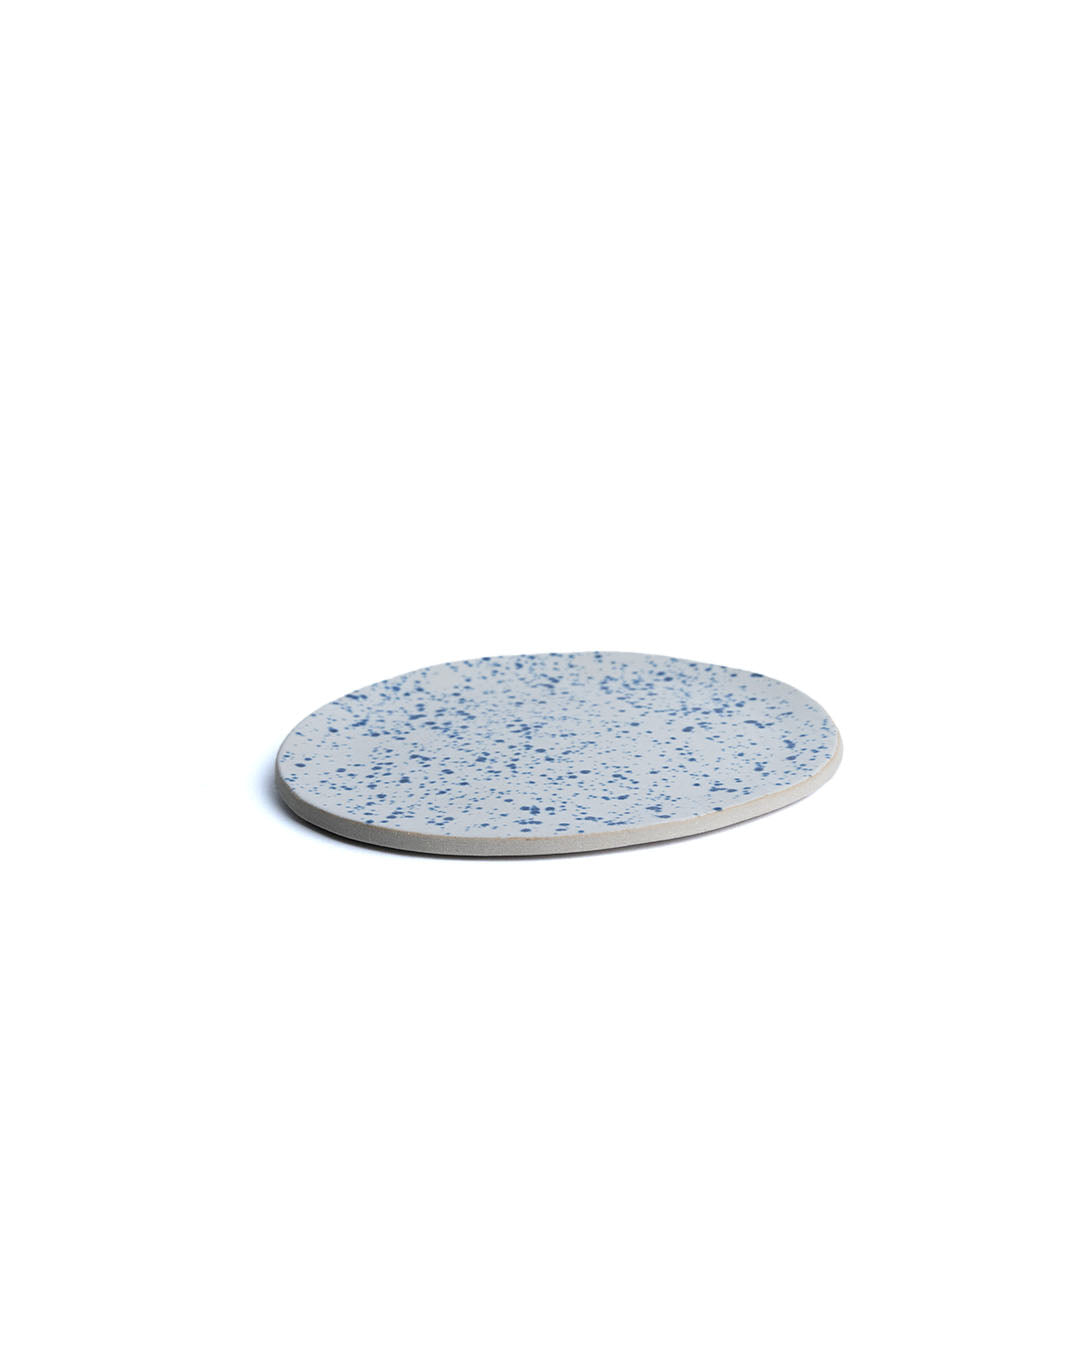 Speckeld Tapas Plate - Goki Ceramique